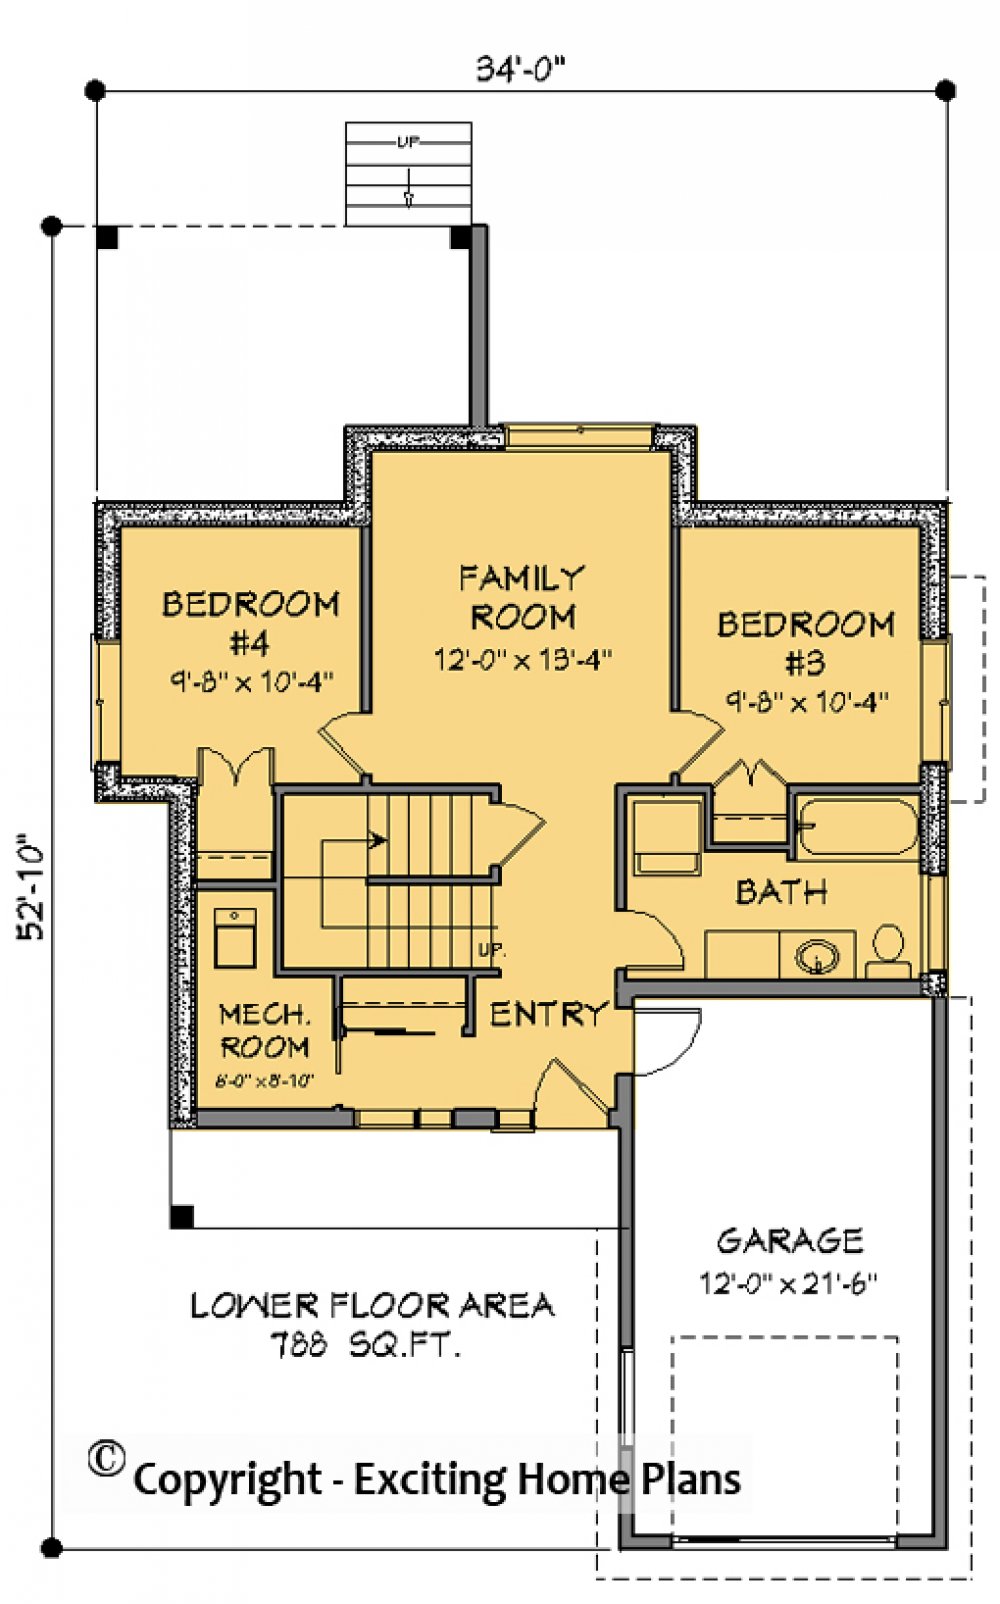 House Plan E1723-10  Lower Floor Plan